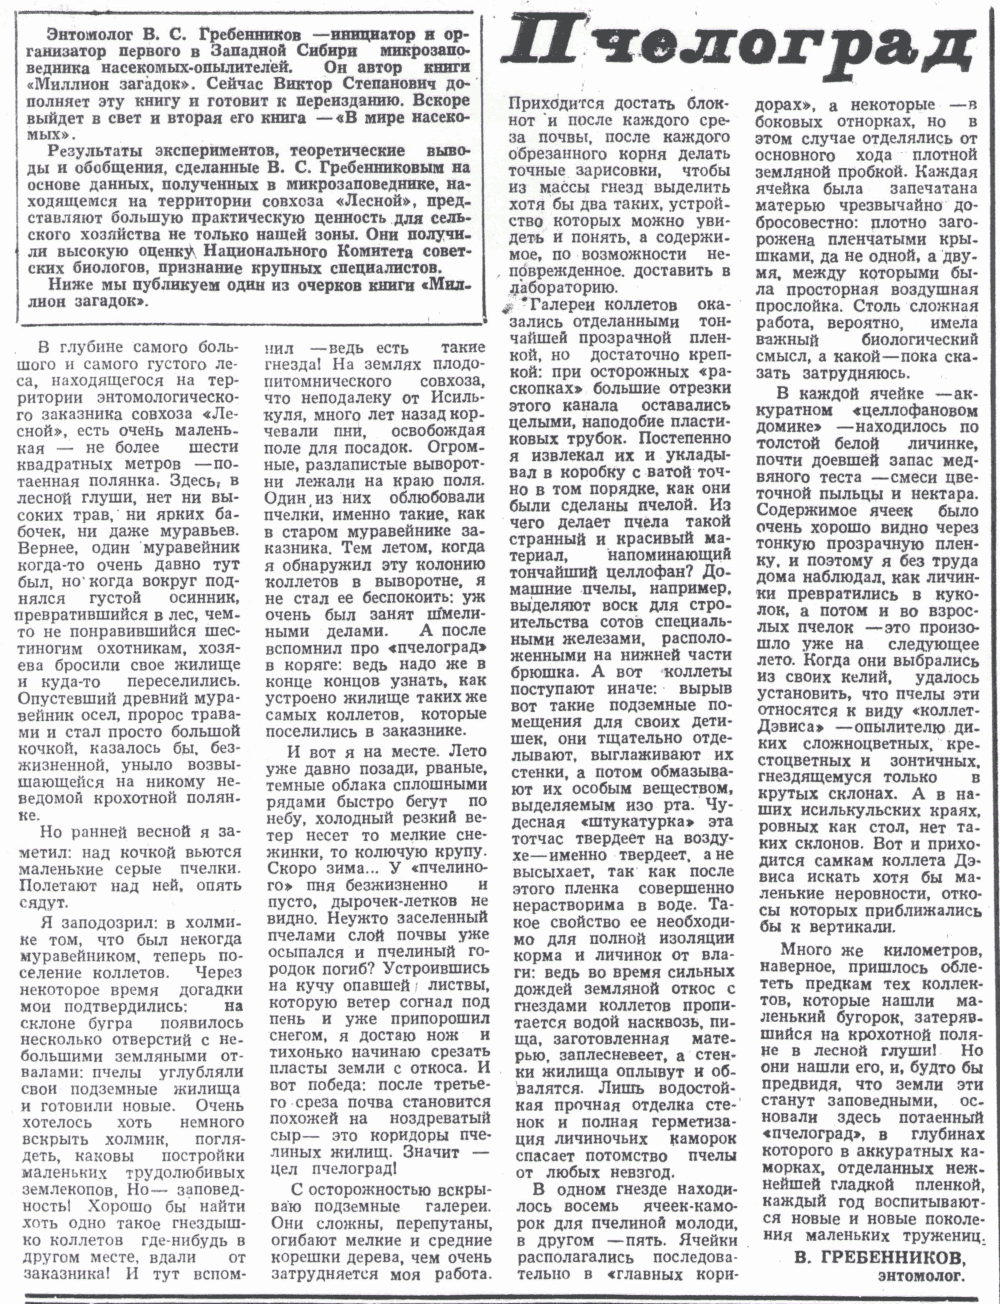 Пчелоград. В.С. Гребенников. Знамя (Исилькульский р-н, Омской обл.), 30.05.1978.